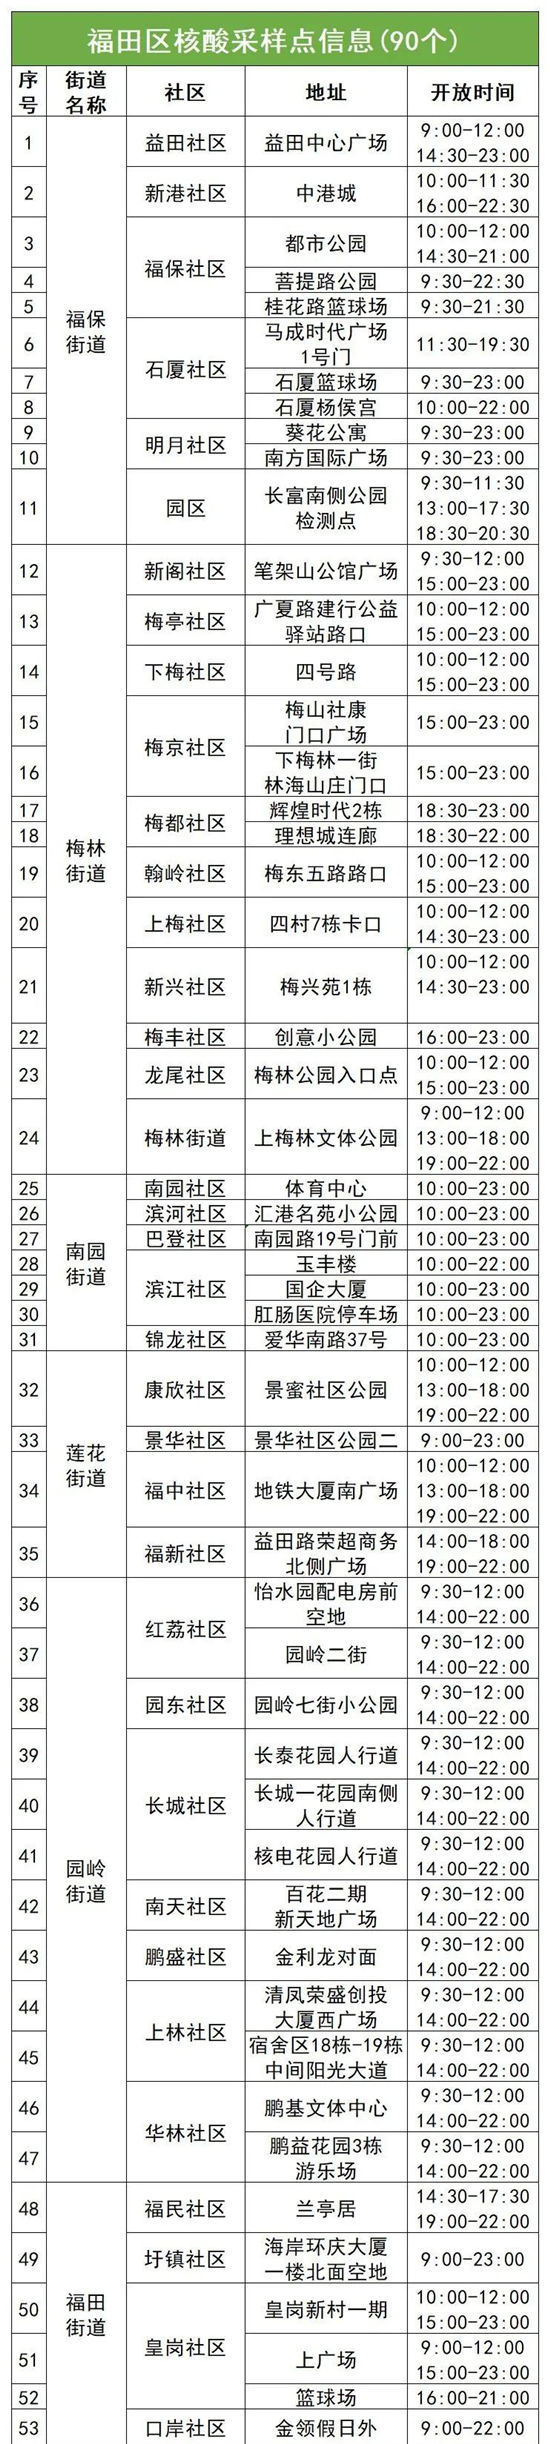 6月27日福田区免费核酸采样点名单